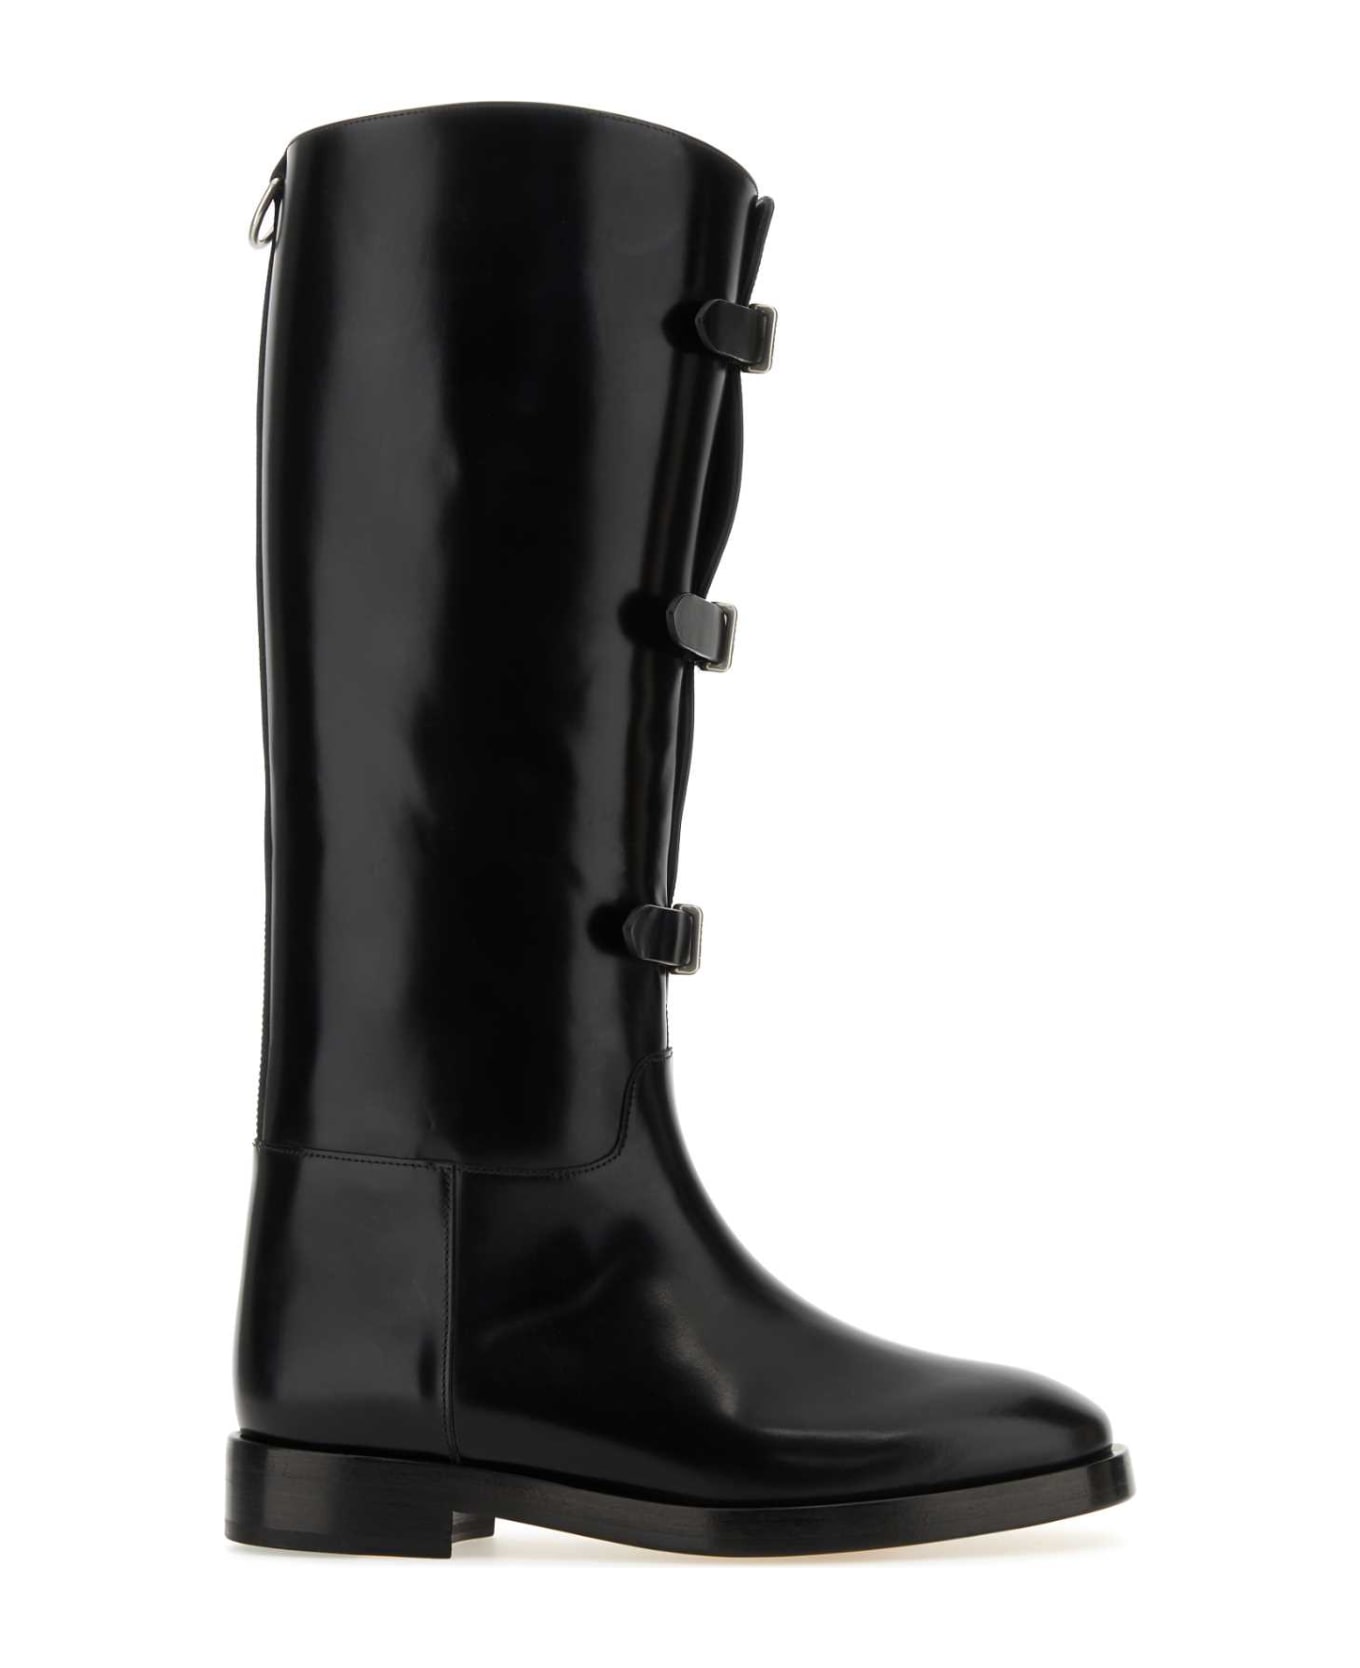 Durazzi Milano Black Leather Boots - BLACK